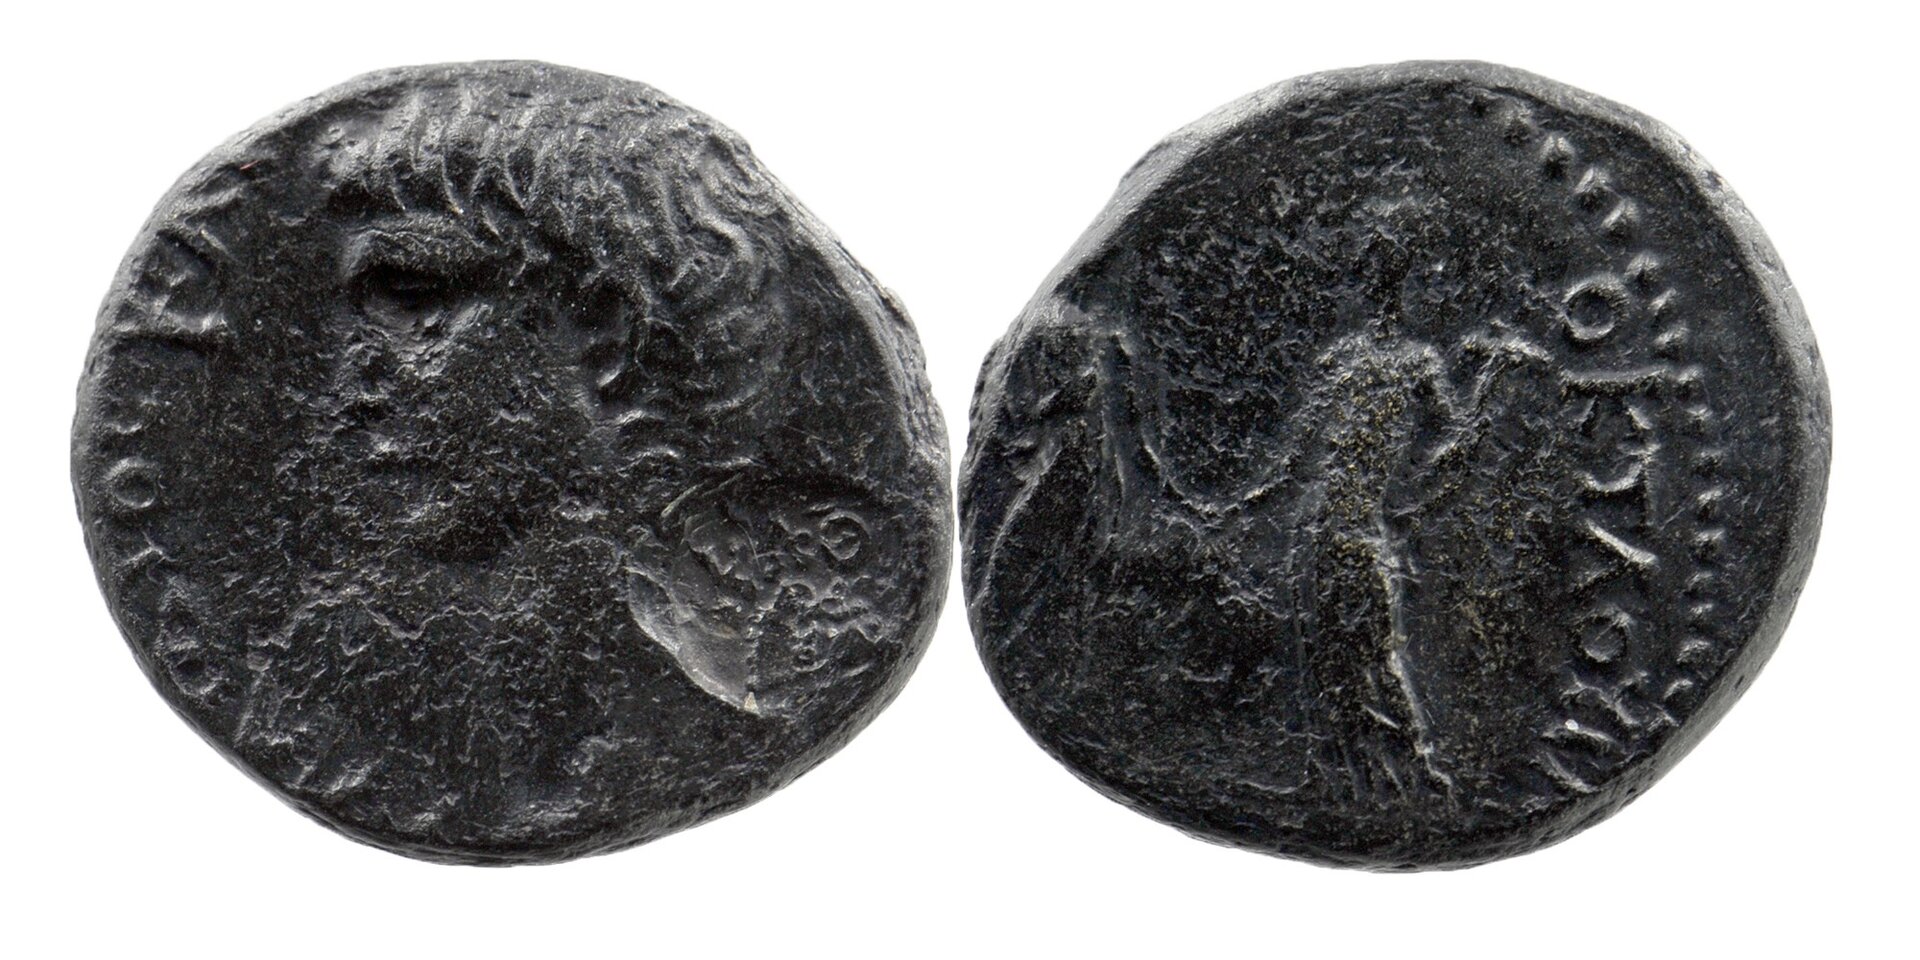 Britannicus AE20 Themis 6, Lot 432 (2020) & 3 (2019), 287.jpg